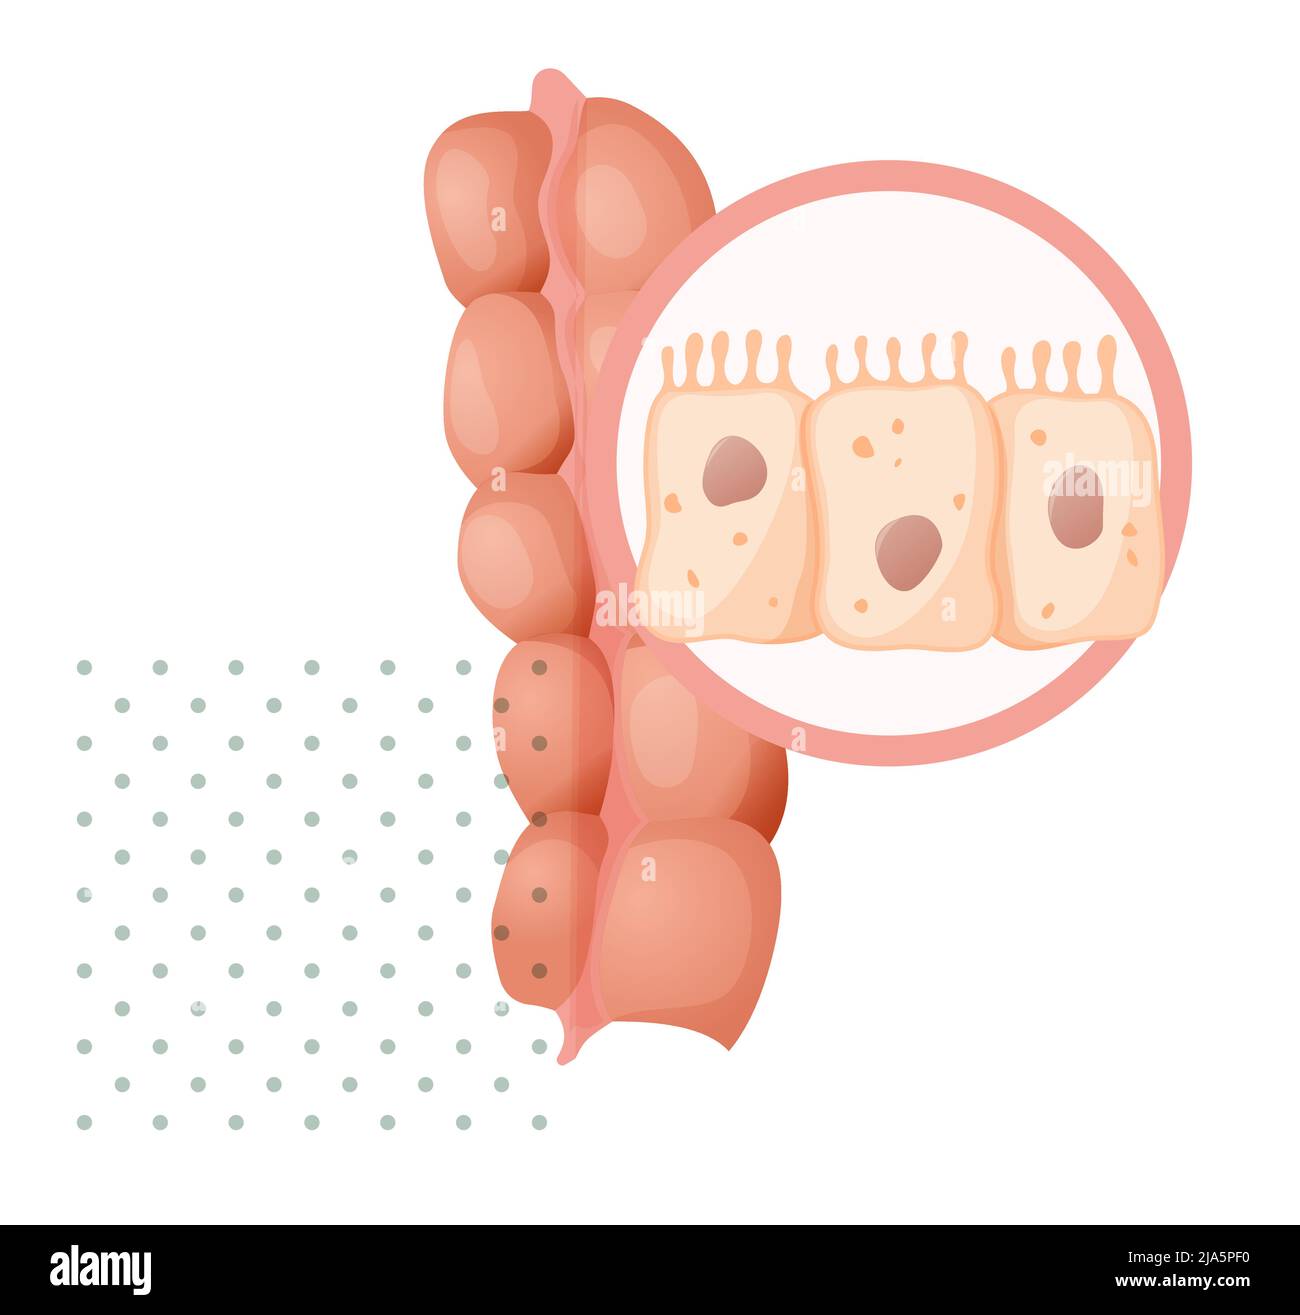 Intestino crasso - sistema cellulare intestinale - Stock Illustration as JPG file Illustrazione Vettoriale